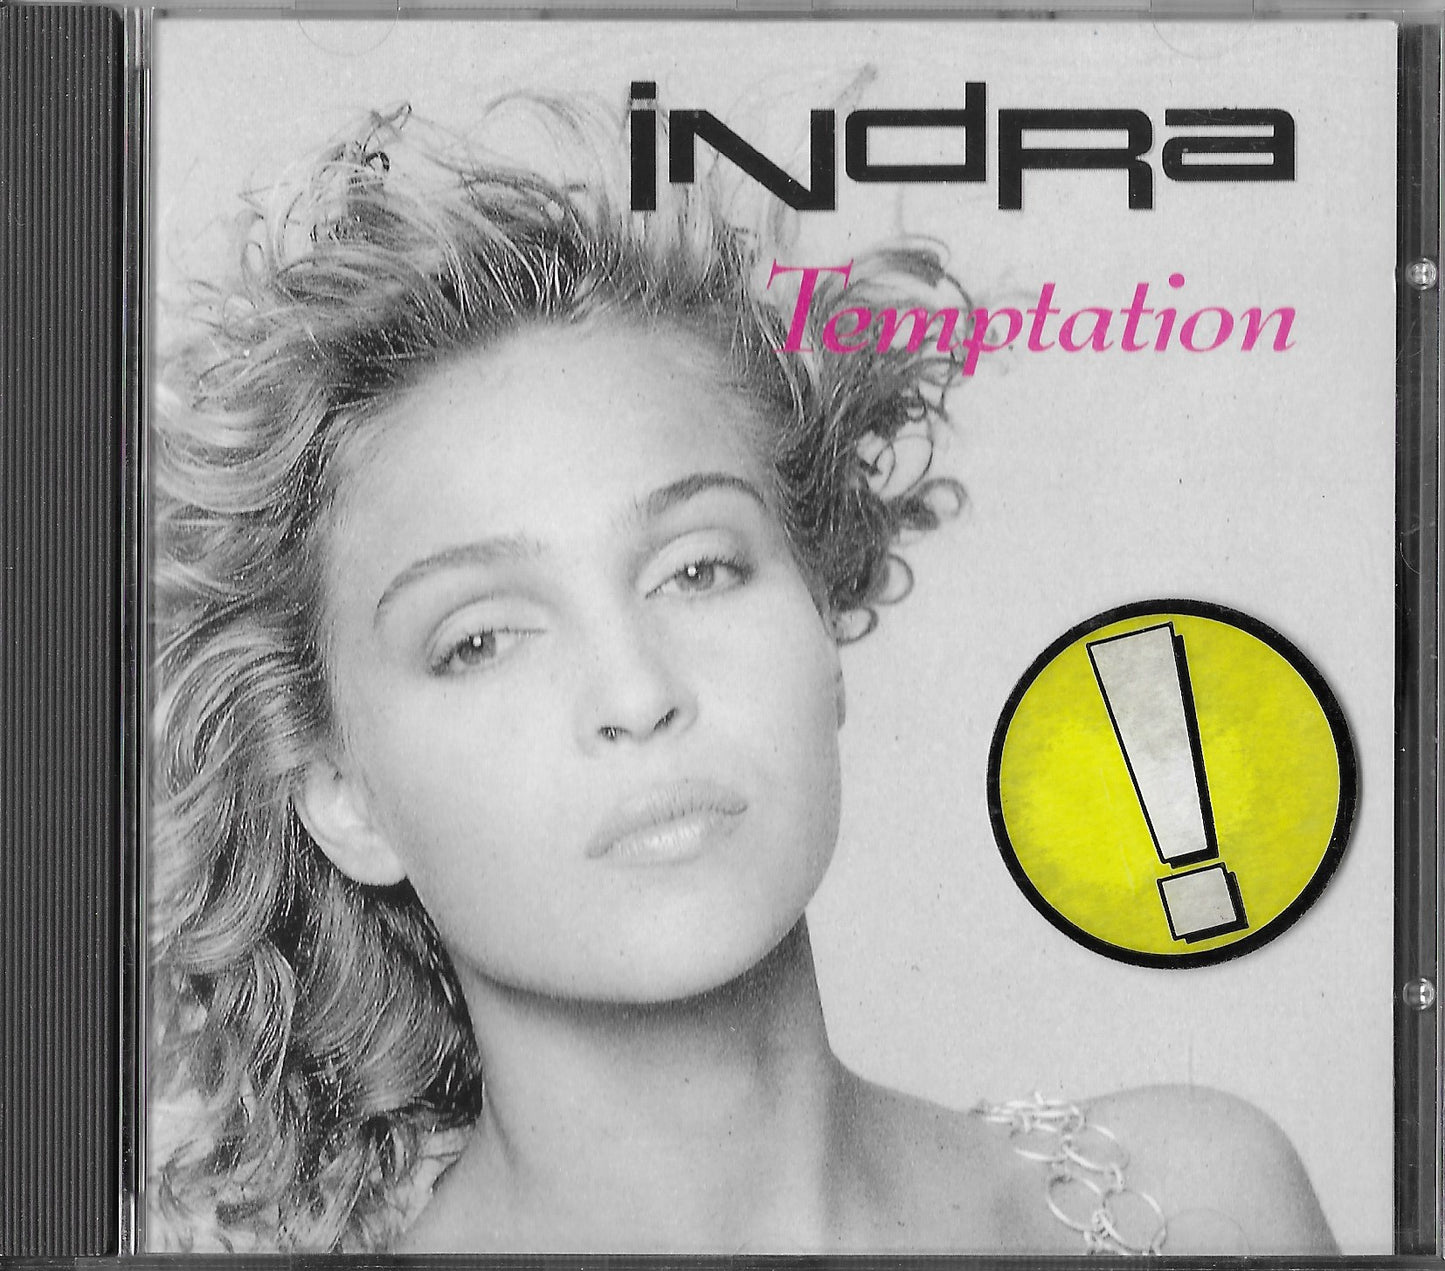 INDRA - Temptation